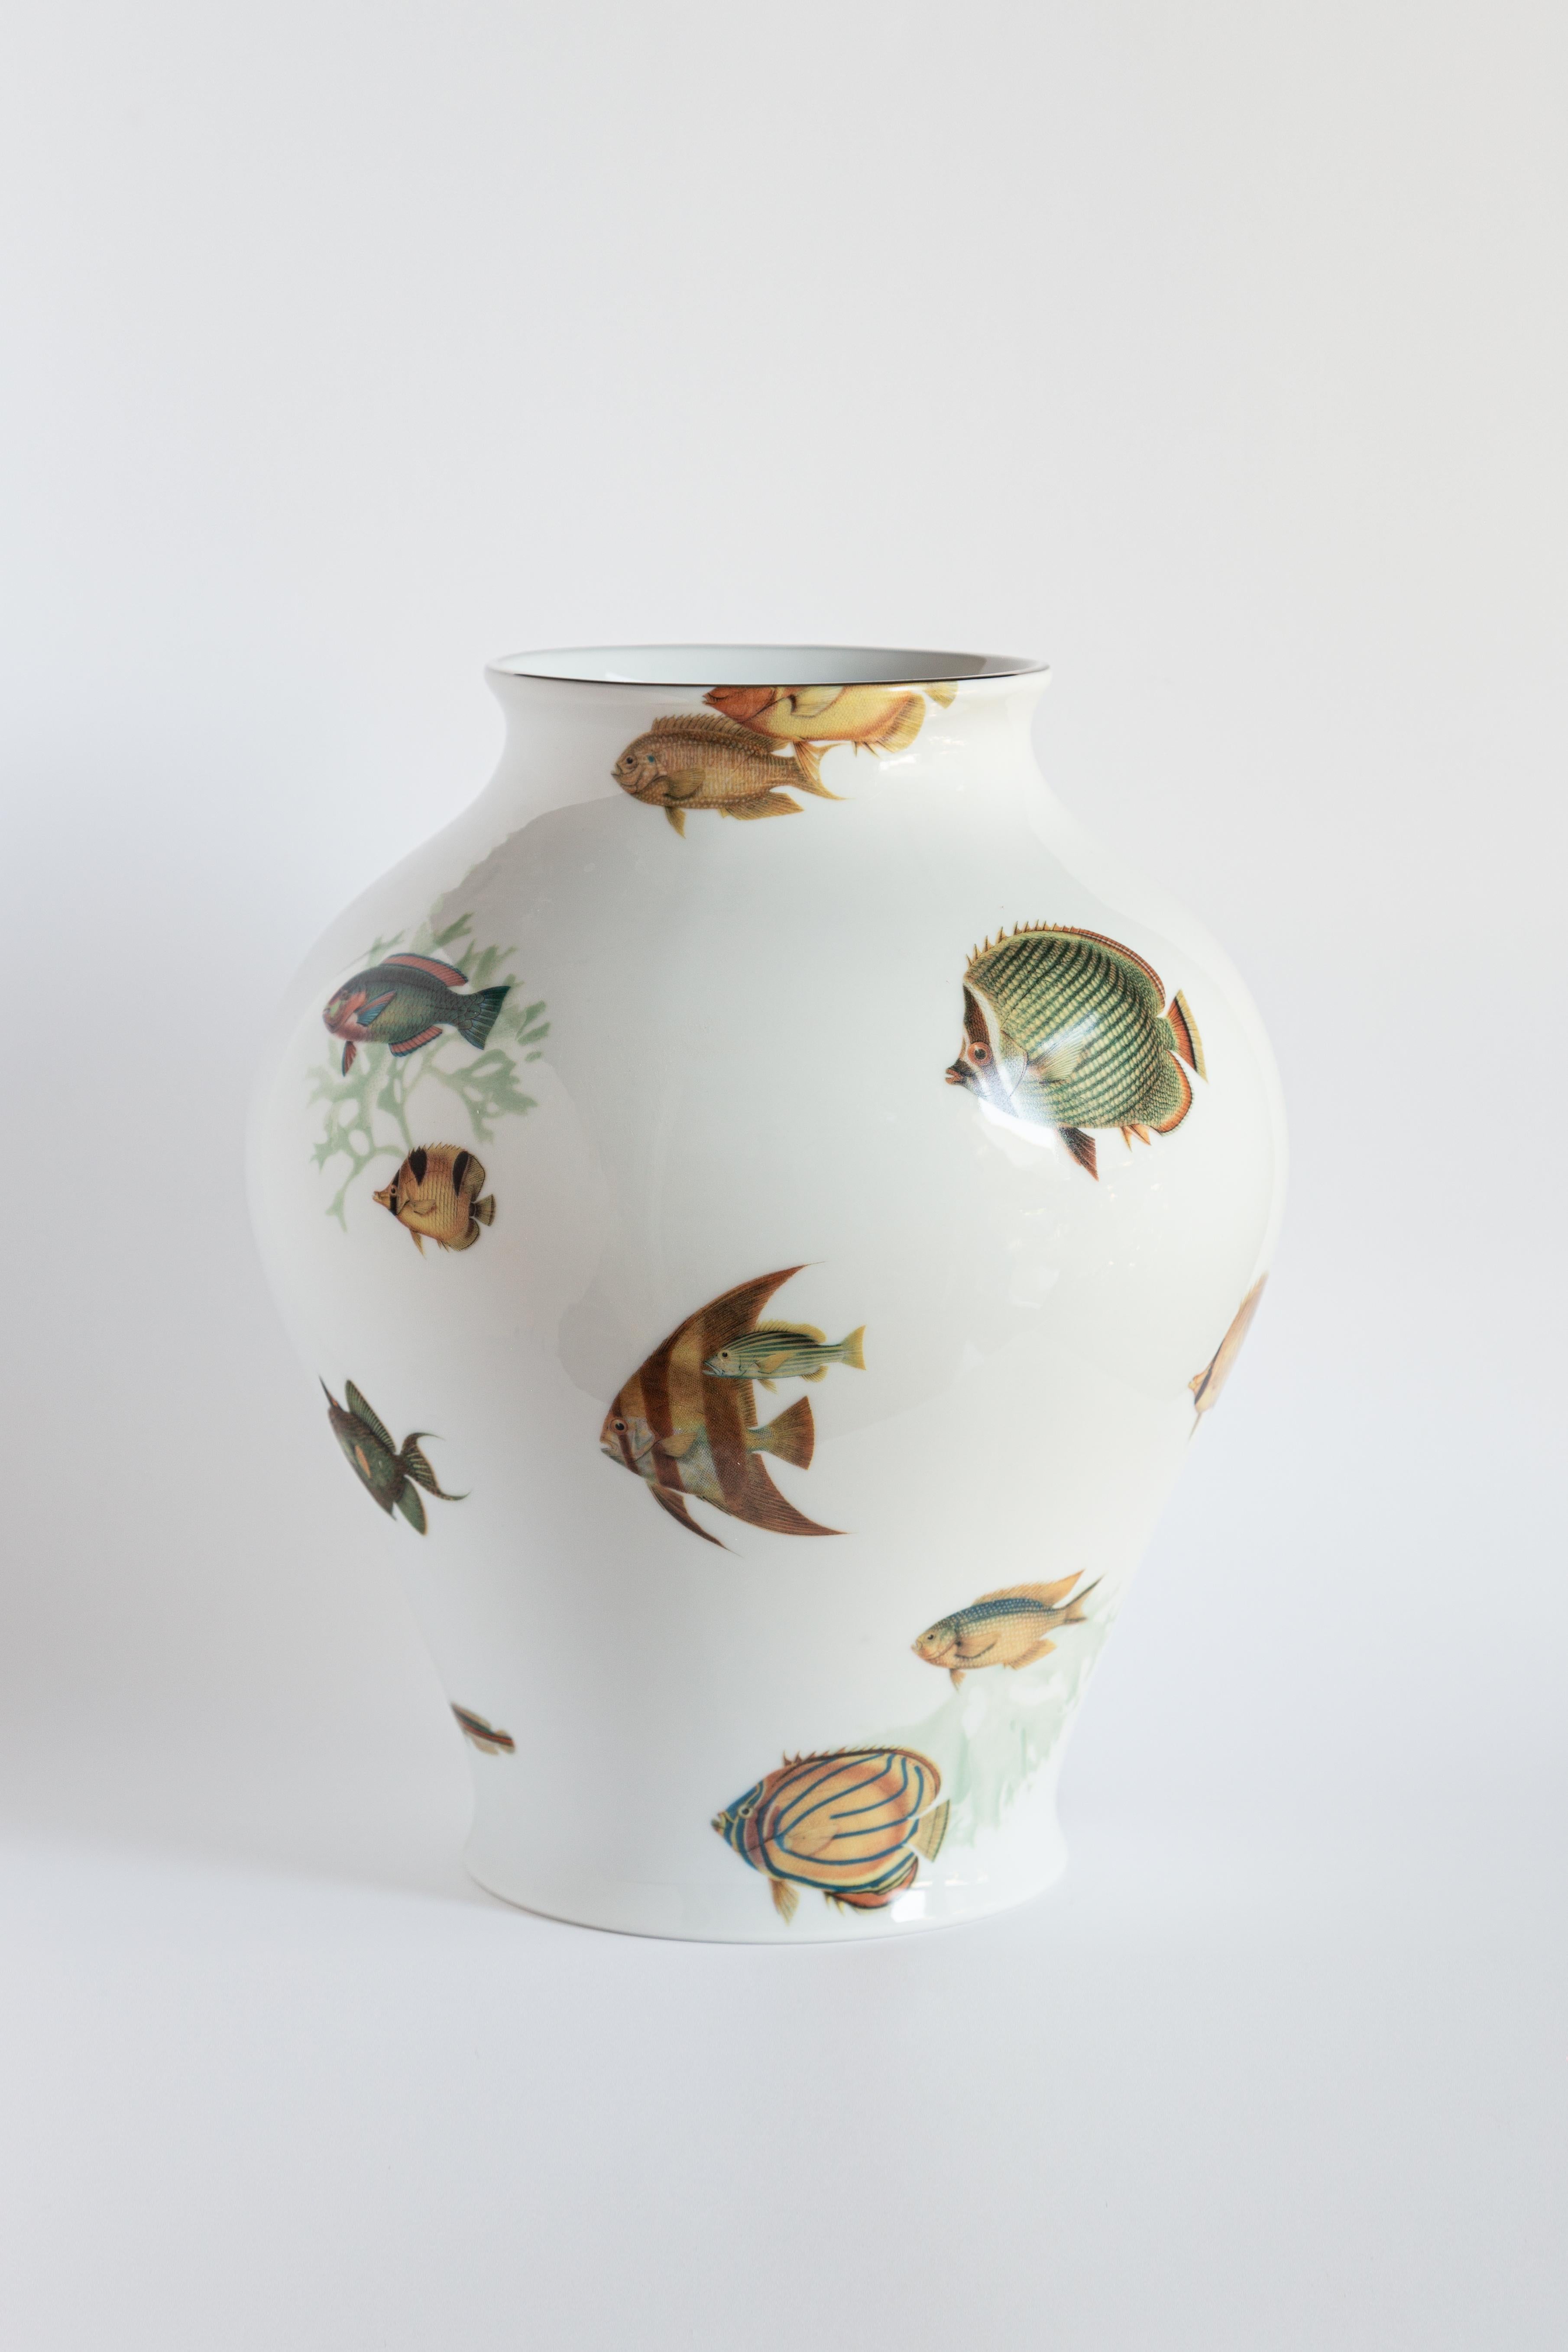 Das klassische Design dieser Porzellanvase wird durch Retro-Dekorationen mit zeitgenössischer Note wieder zum Leben erweckt. Das Korallenriff der Amami-Inseln in der Nähe von Japan inspirierte dieses Design, bei dem tropische Fische die Oberfläche